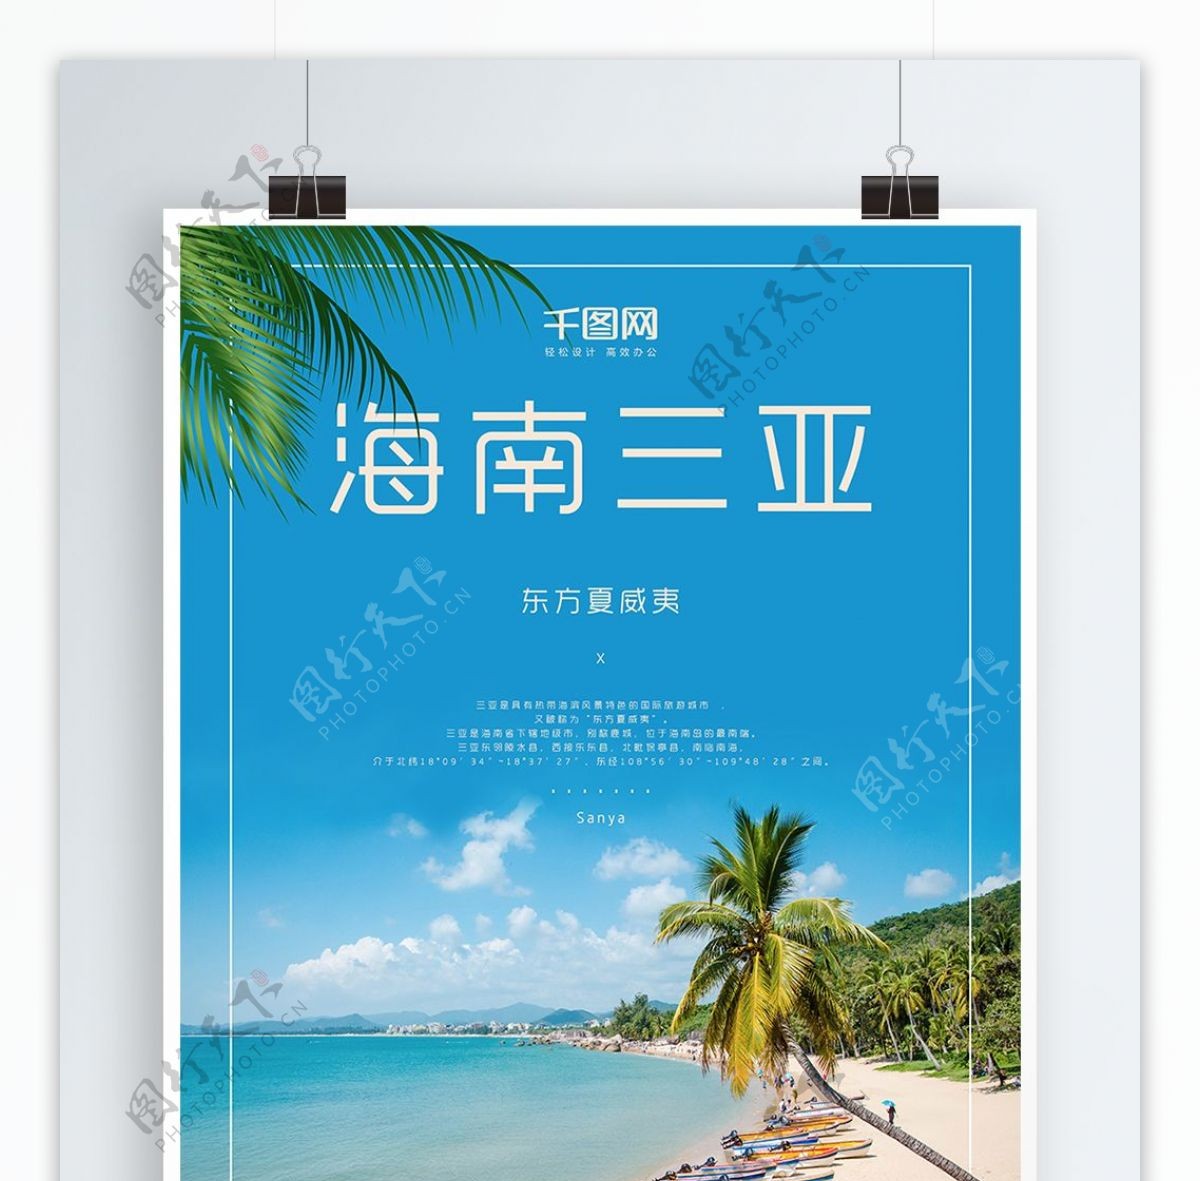 简洁海南三亚旅游促销海报